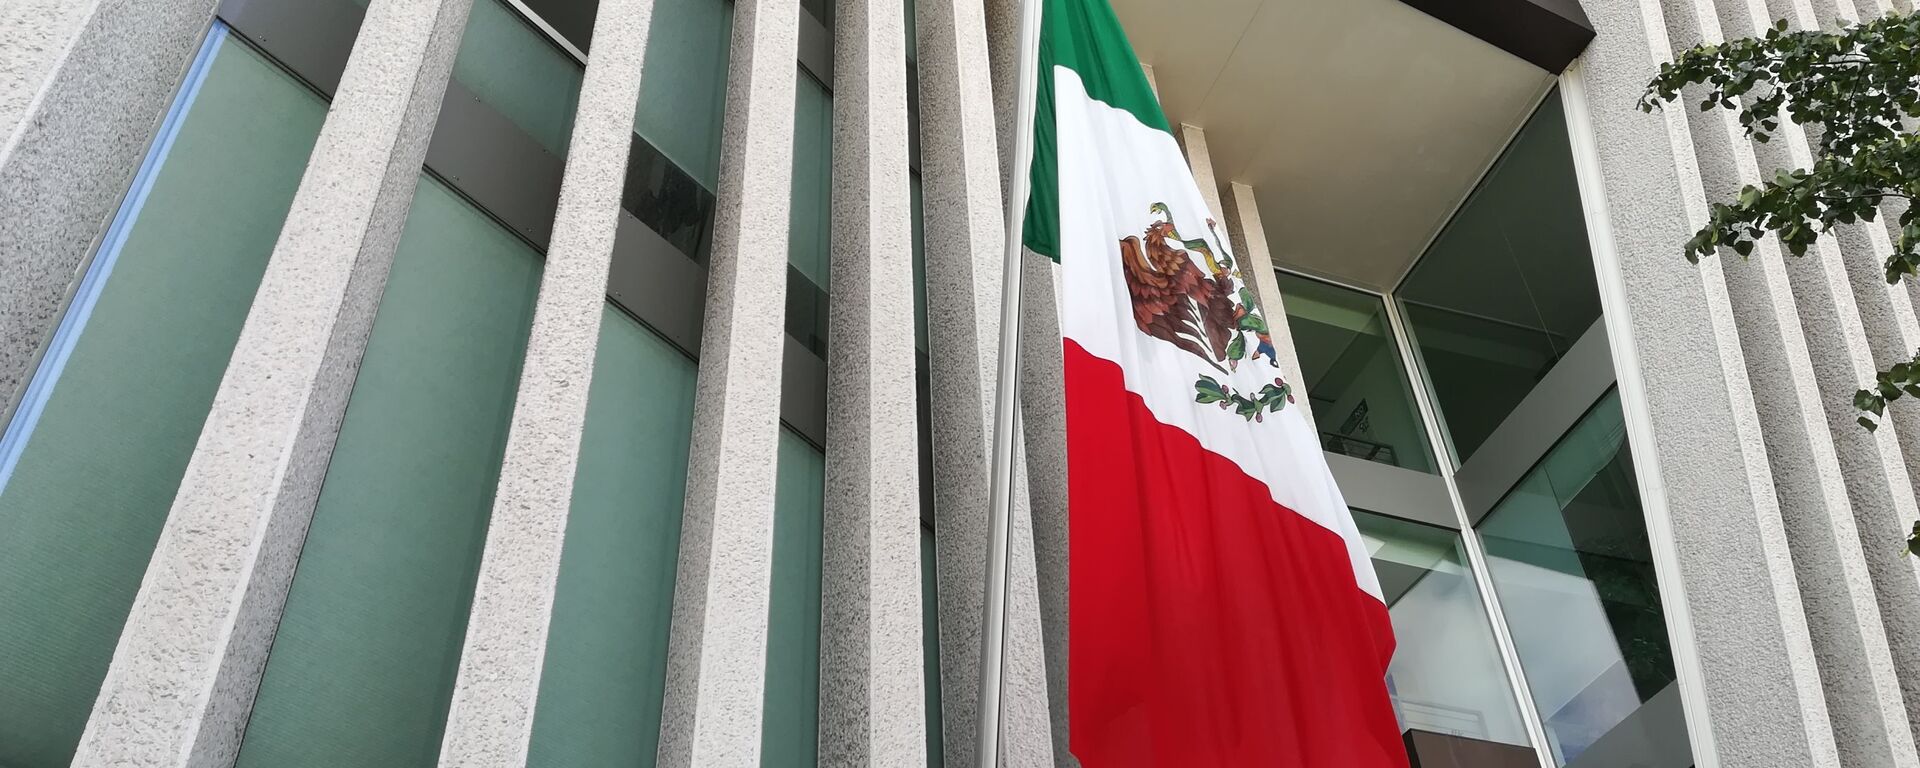 Bandera de México - Sputnik Mundo, 1920, 22.02.2021